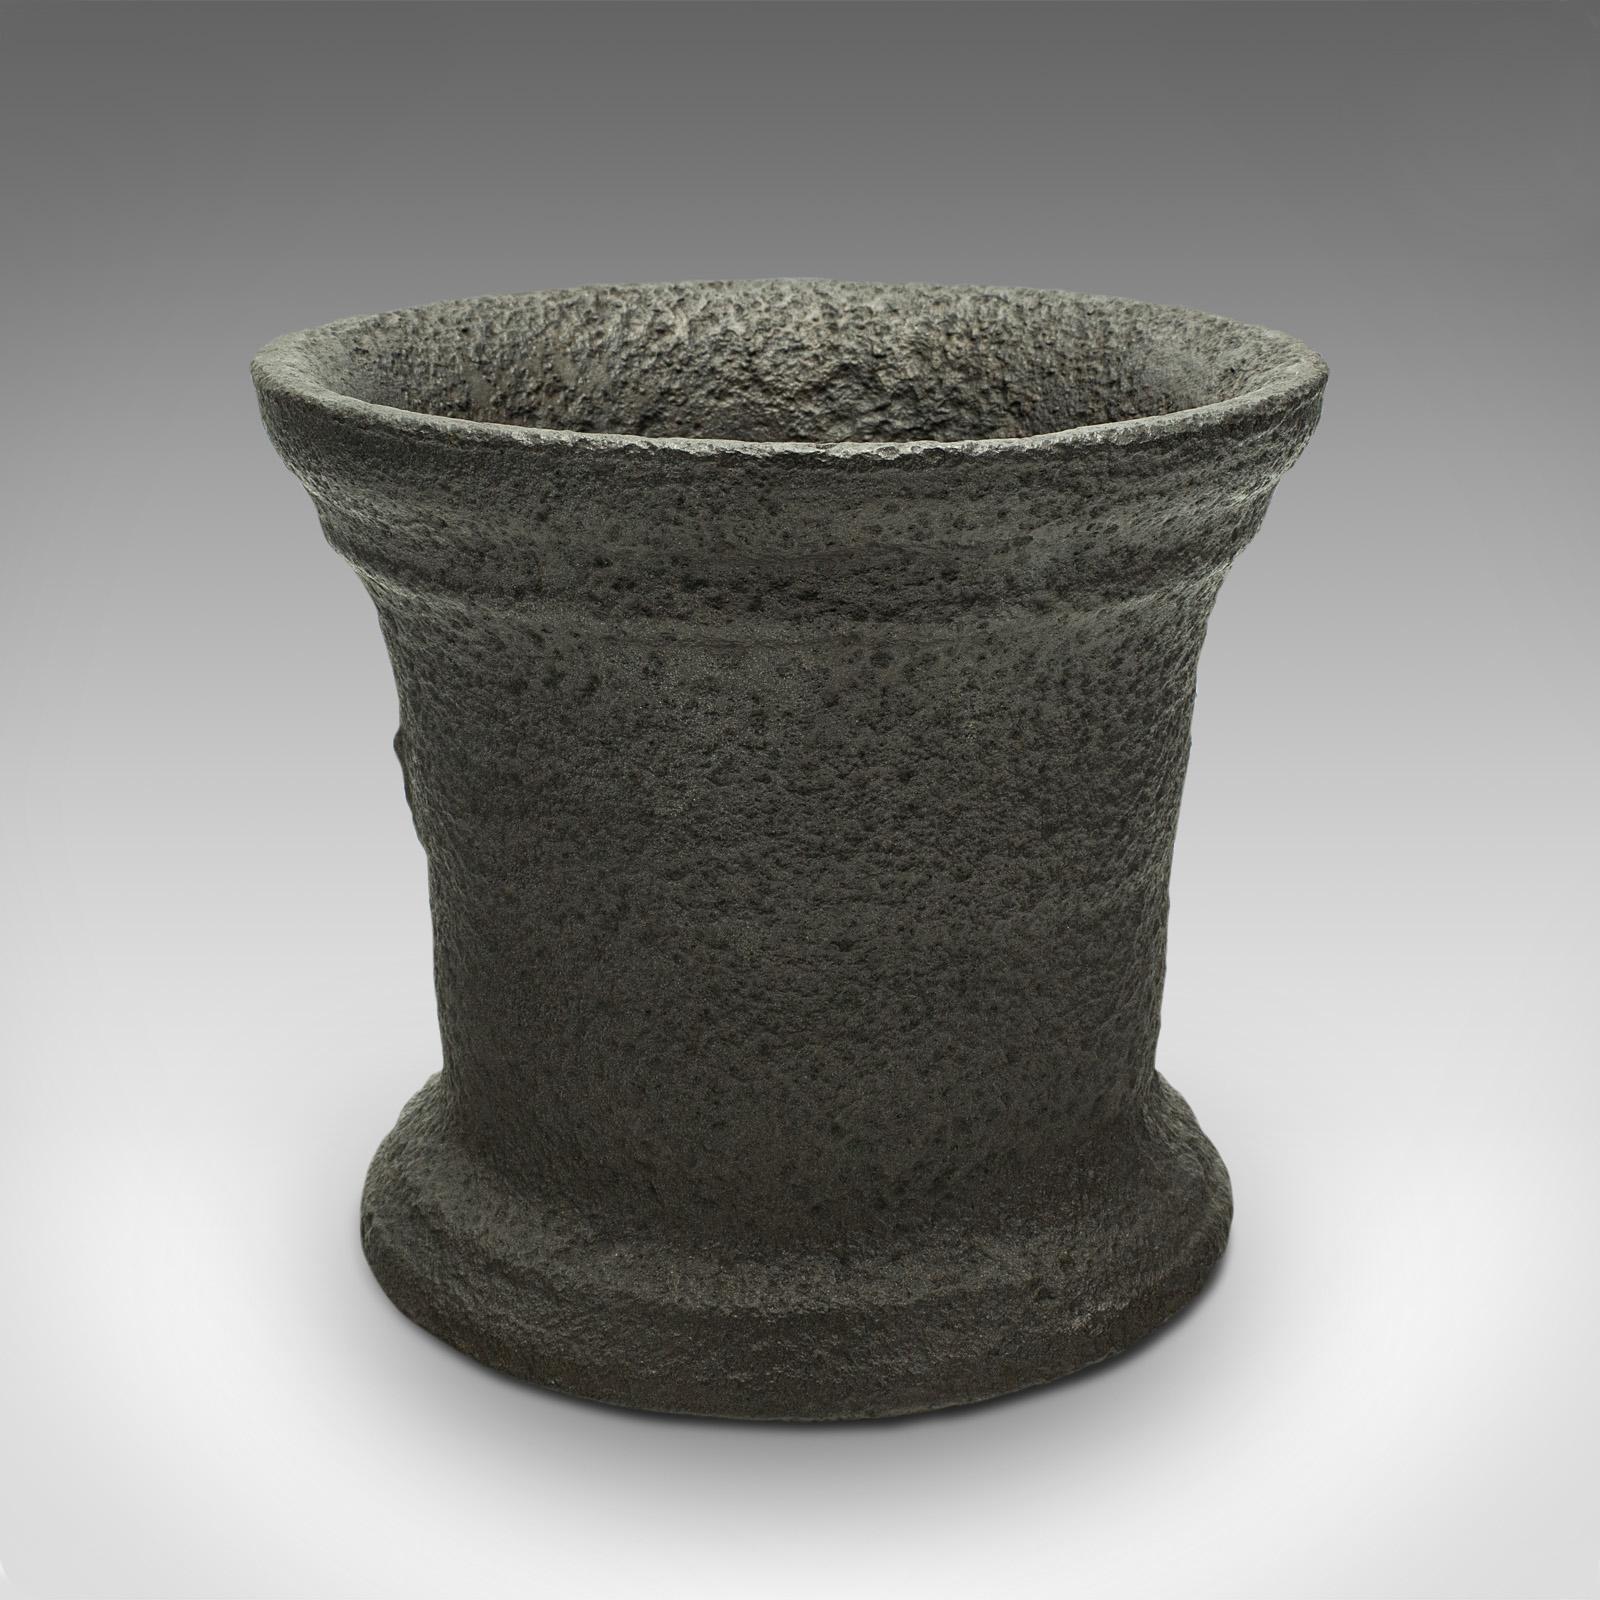 Il s'agit d'un lourd mortier de chimiste ancien. Un pot de fleurs décoratif en fonte anglaise, datant du milieu de la période géorgienne, vers 1750.

Un mortier géorgien fascinant et altéré par les intempéries
Présentant une patine vieillie